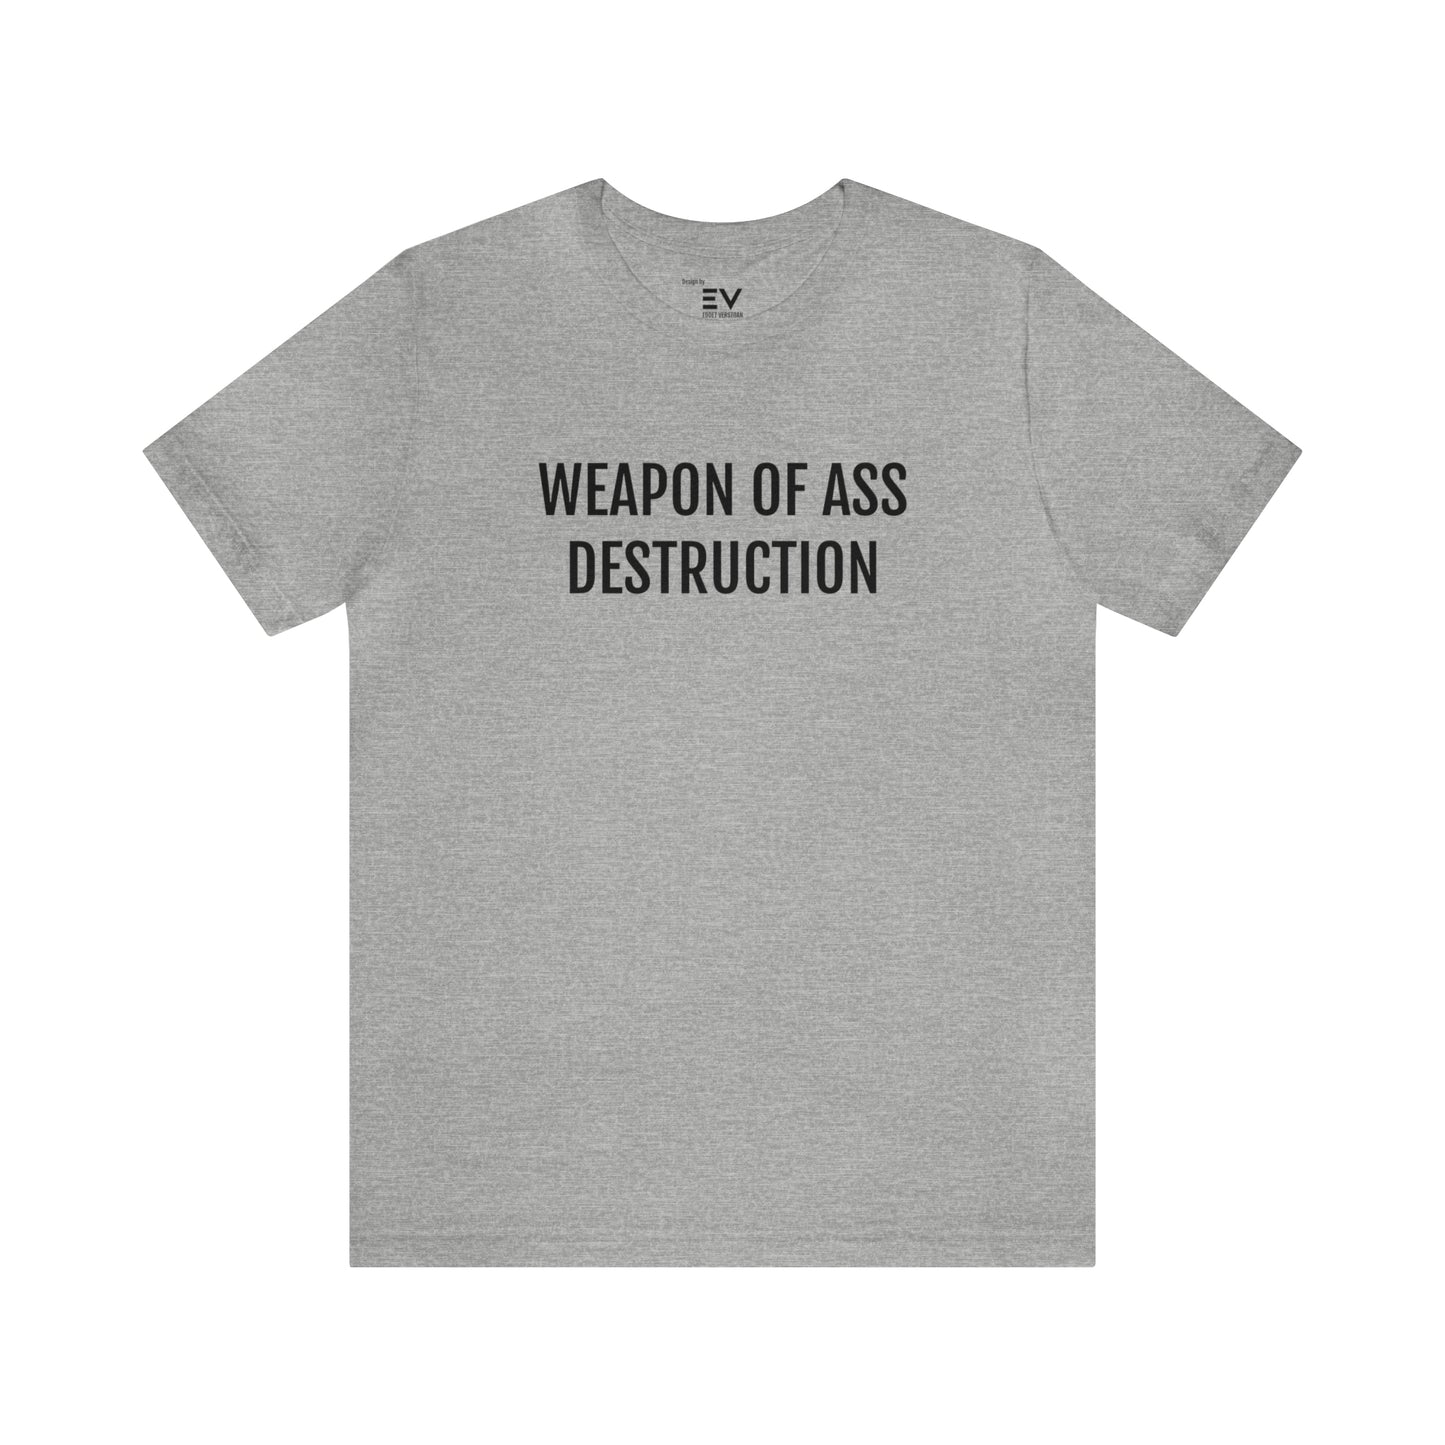 Grappig t-shirt kopen - Origineel Cadeau T-shirt - Duurzaam Geproduceerd